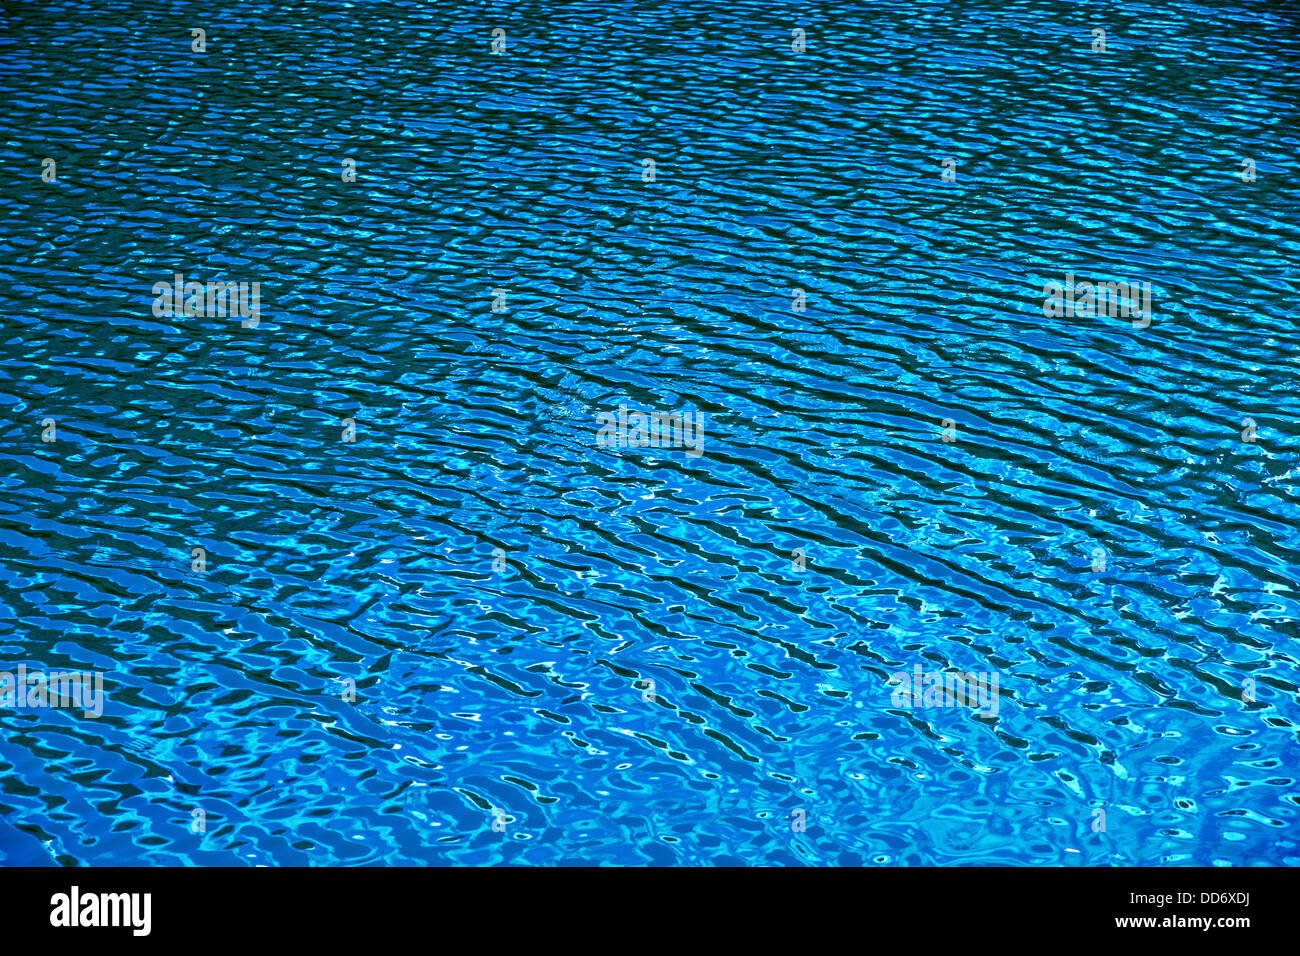 Rain on sea surface Stock Photo